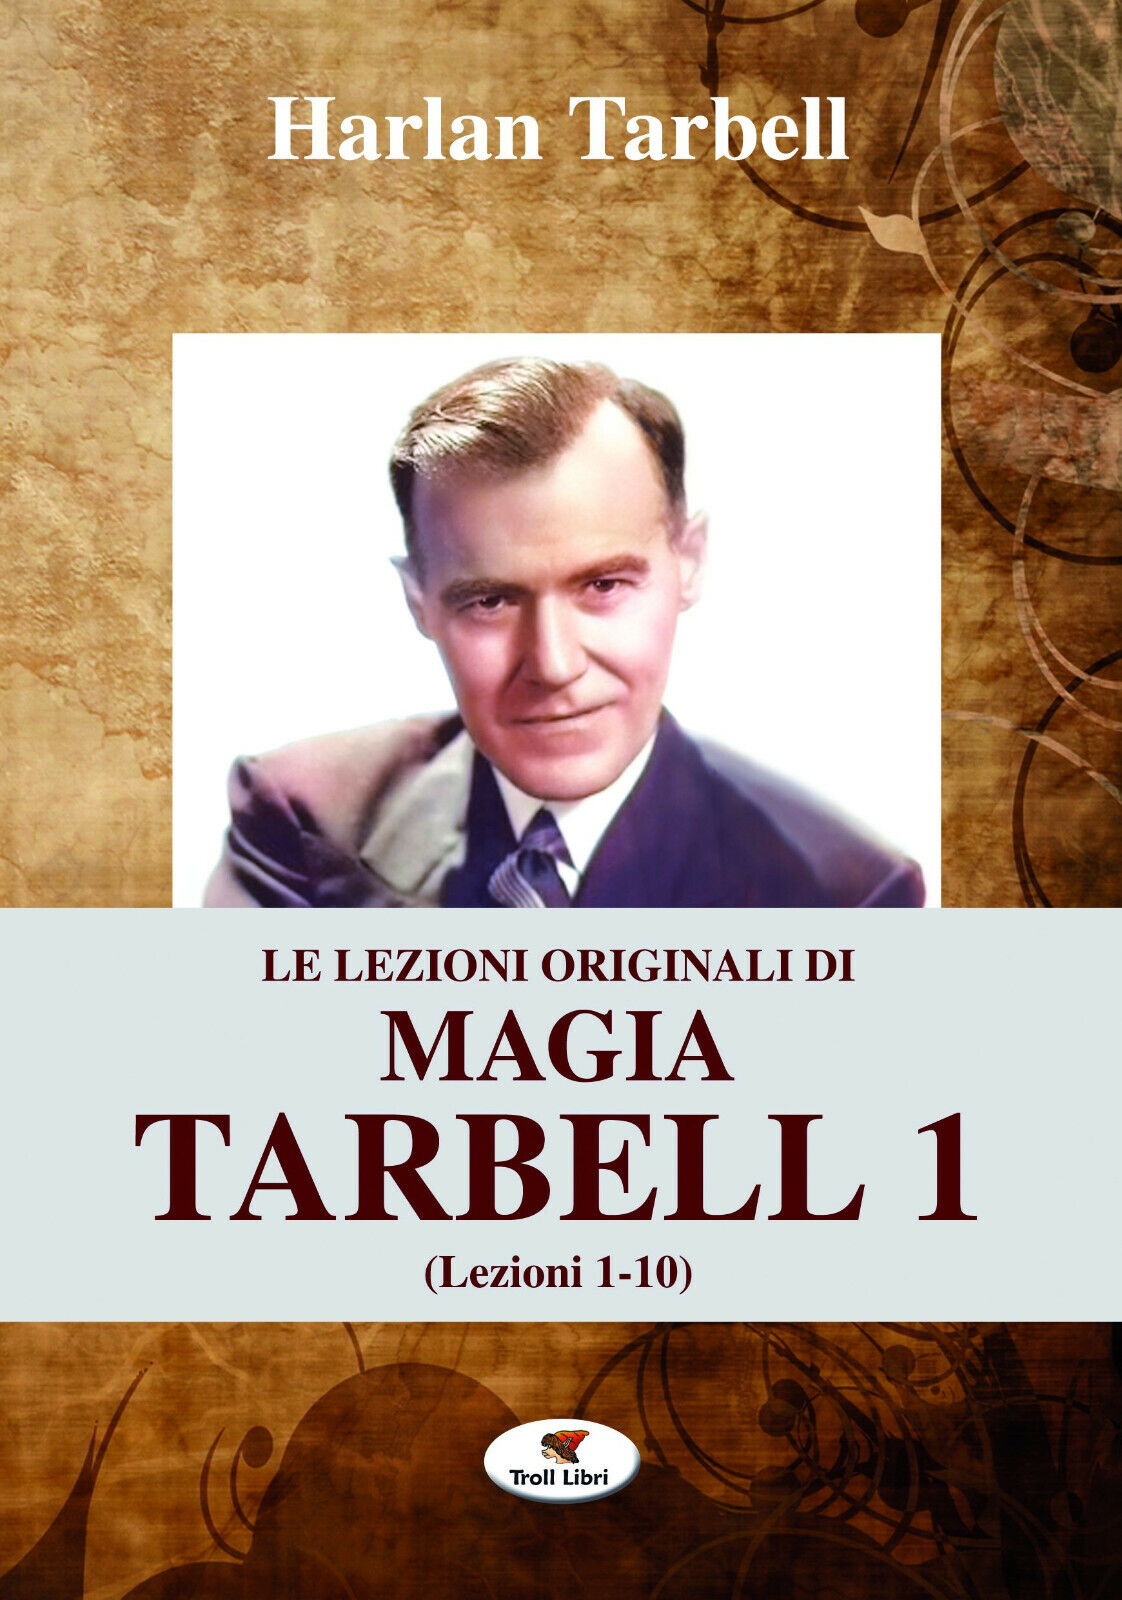 Le lezioni originali di magia Tarbell. Lezioni 1-10 (Vol. 1) - Tarbell  - 2017